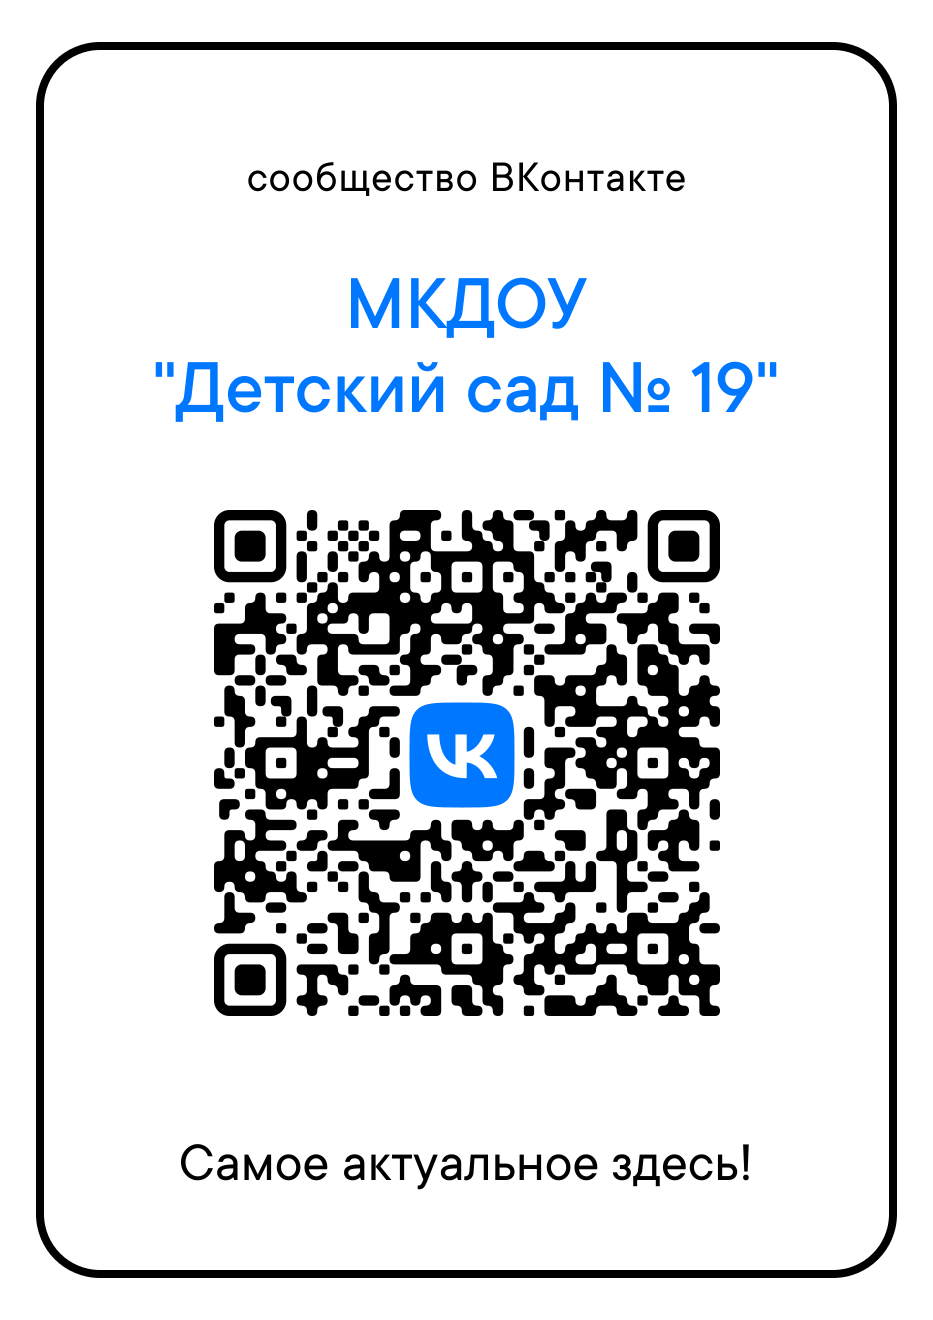 сообщество ВКонтакте